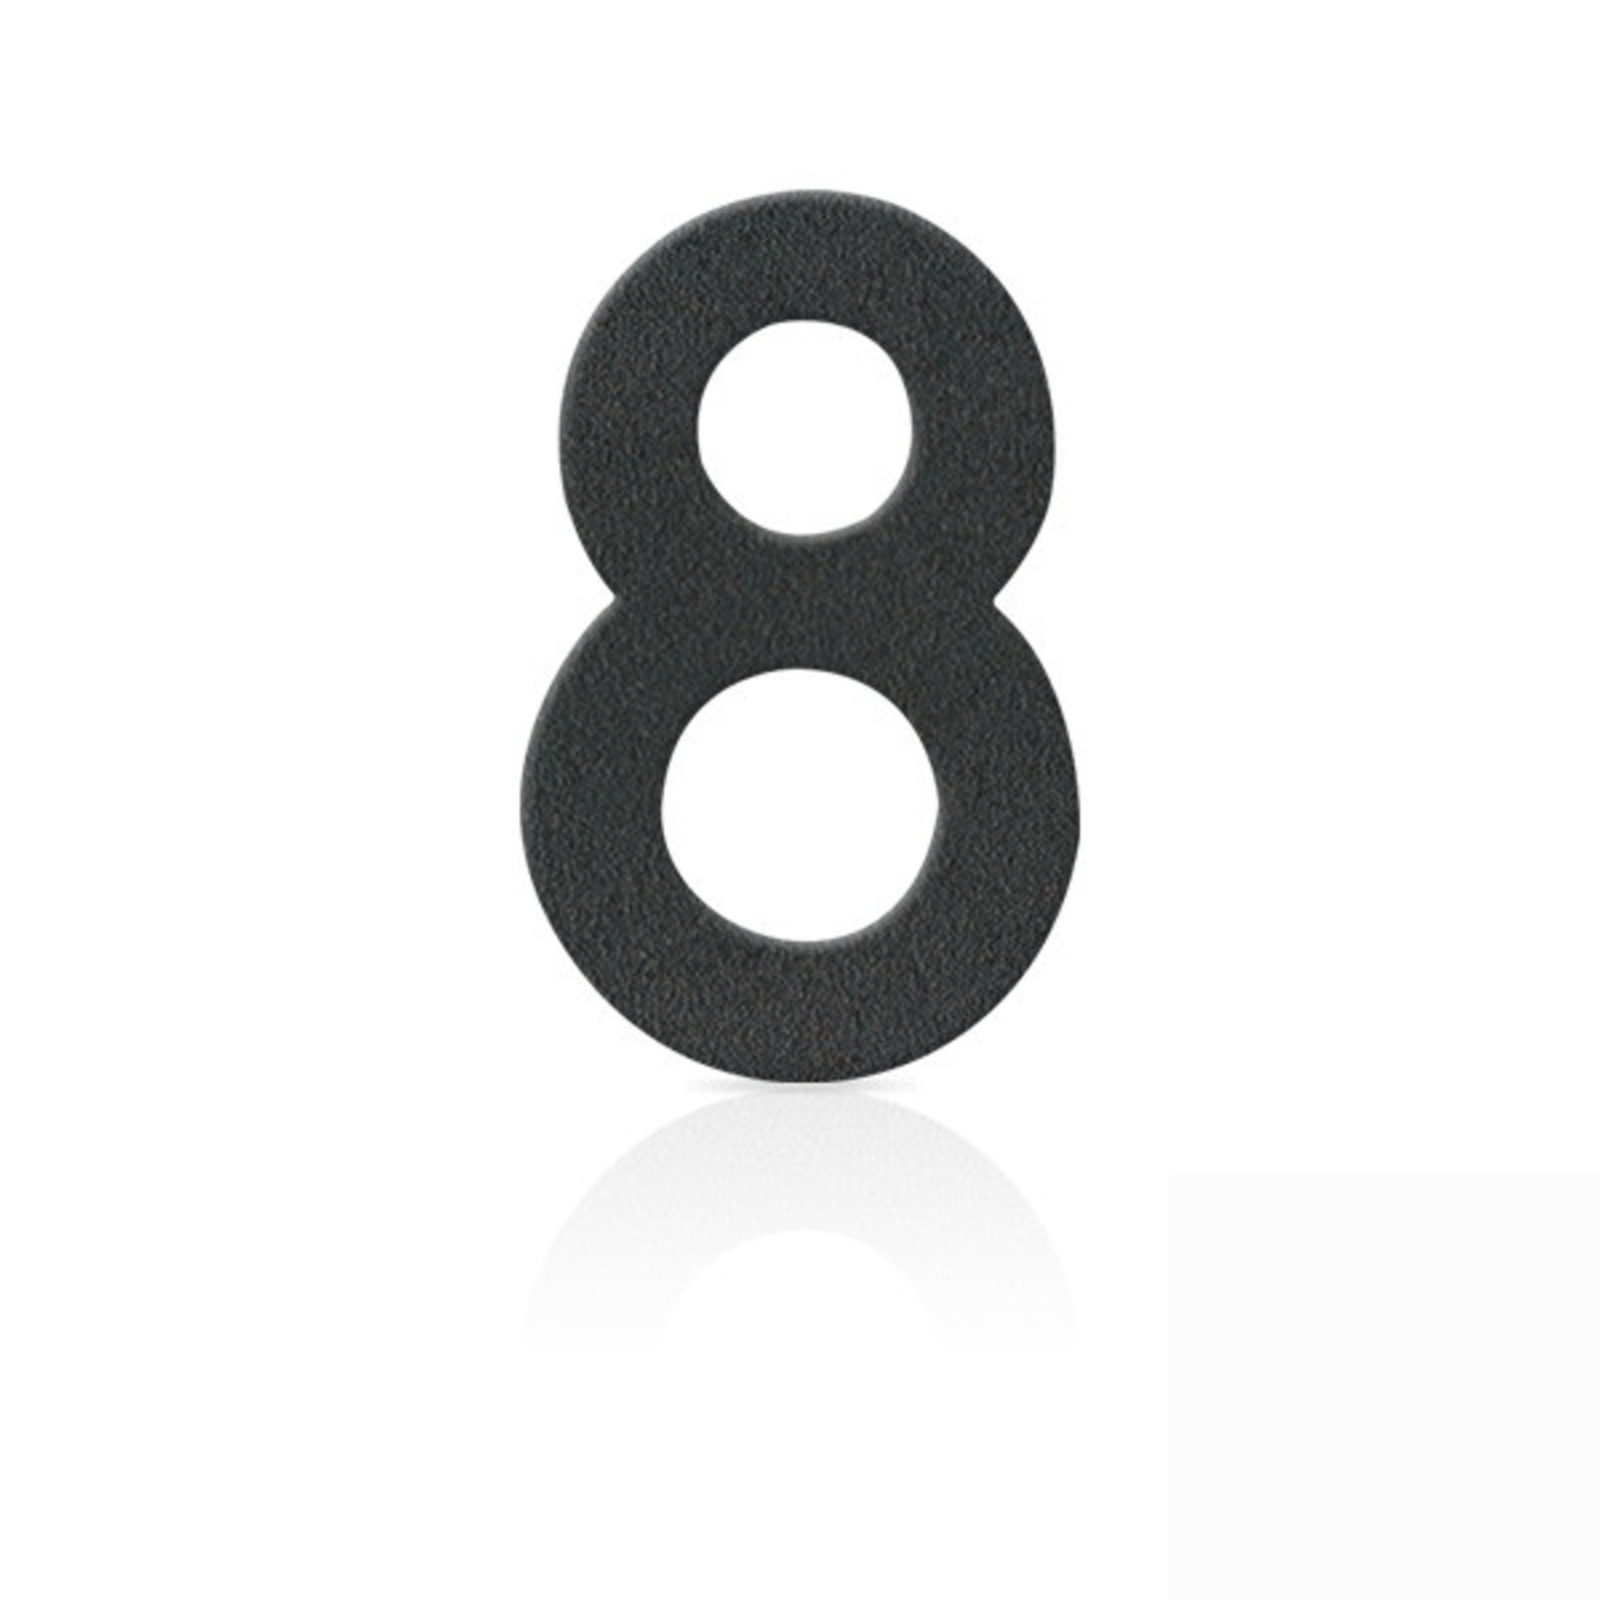 Nerezová domovní čísla číslice 8, grafit šedý